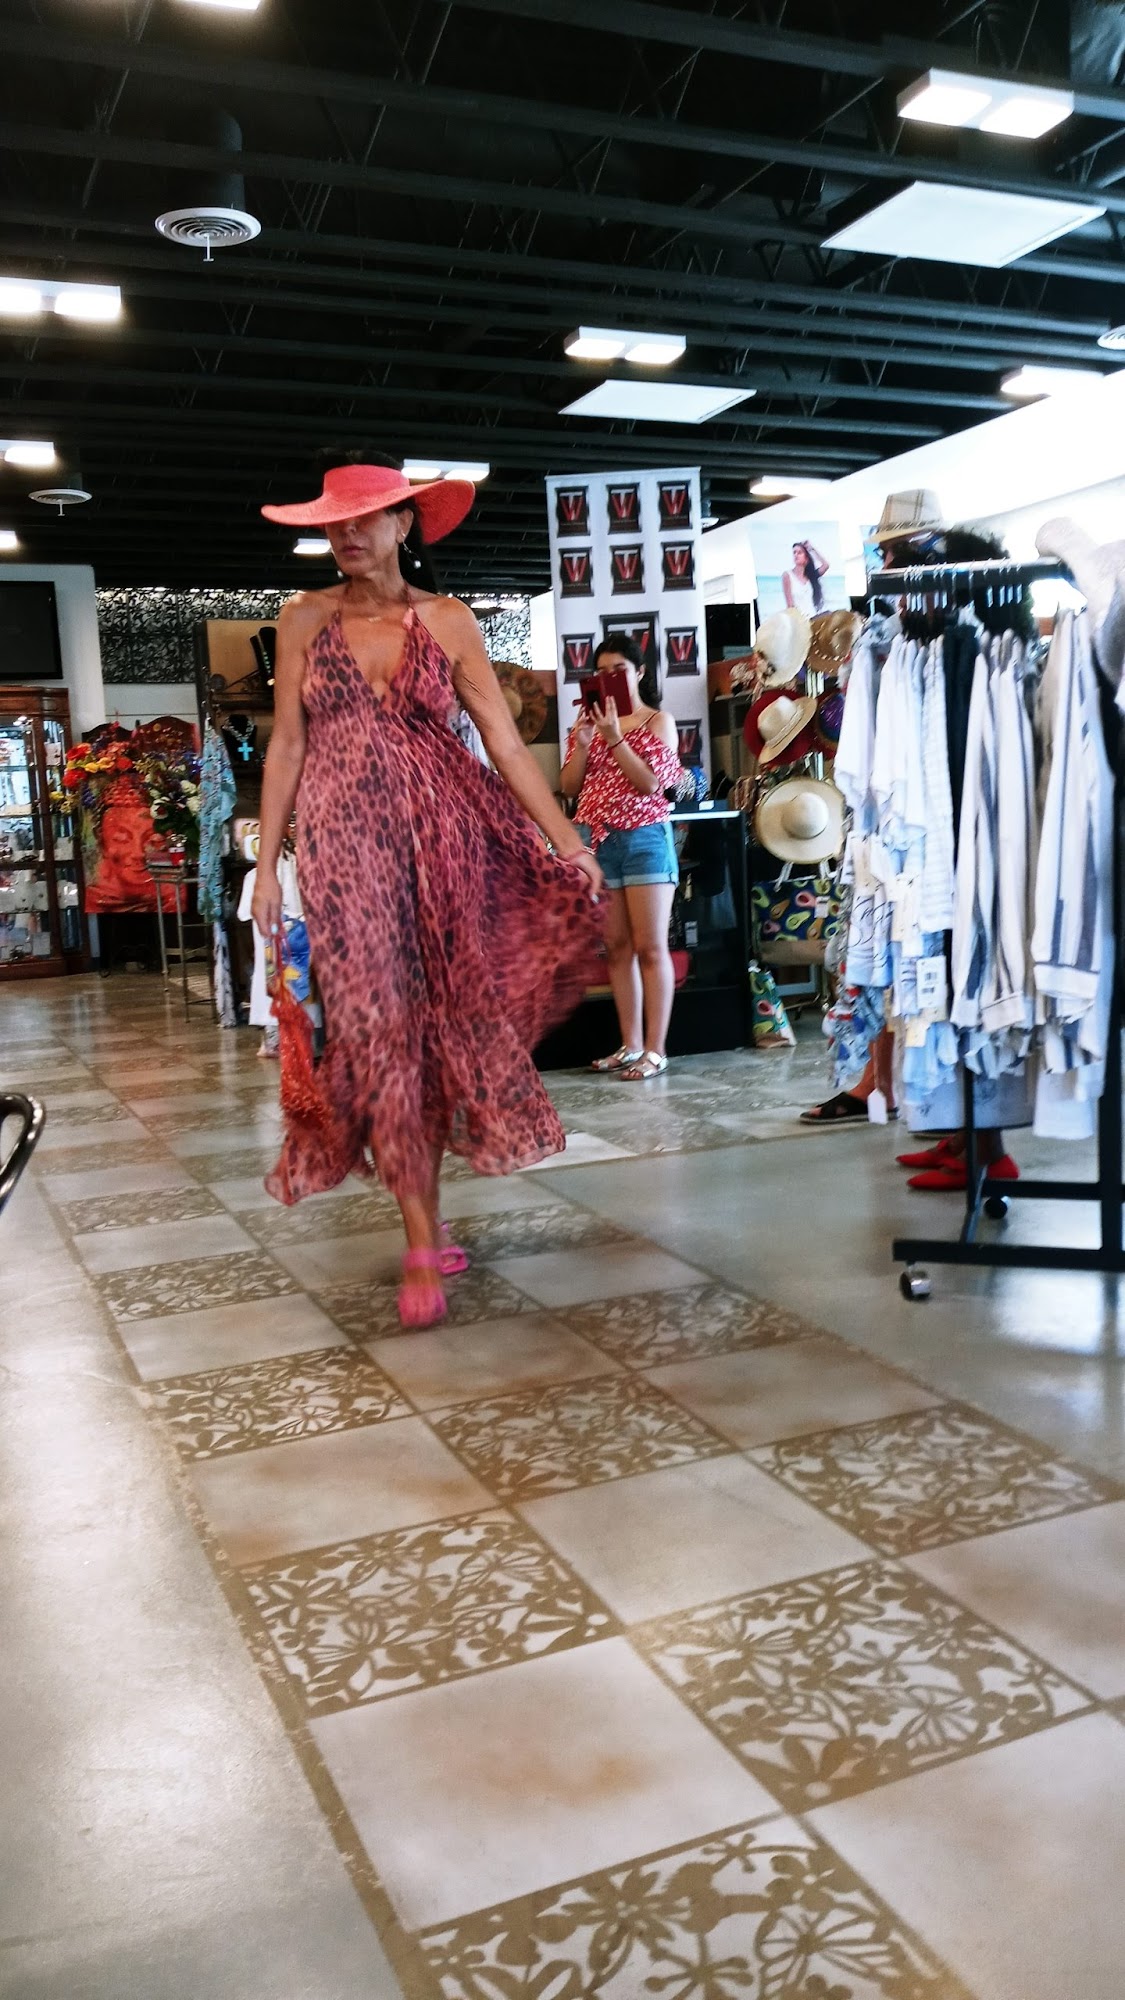 The Shops on San Pablo - Venus Fashion Boutique